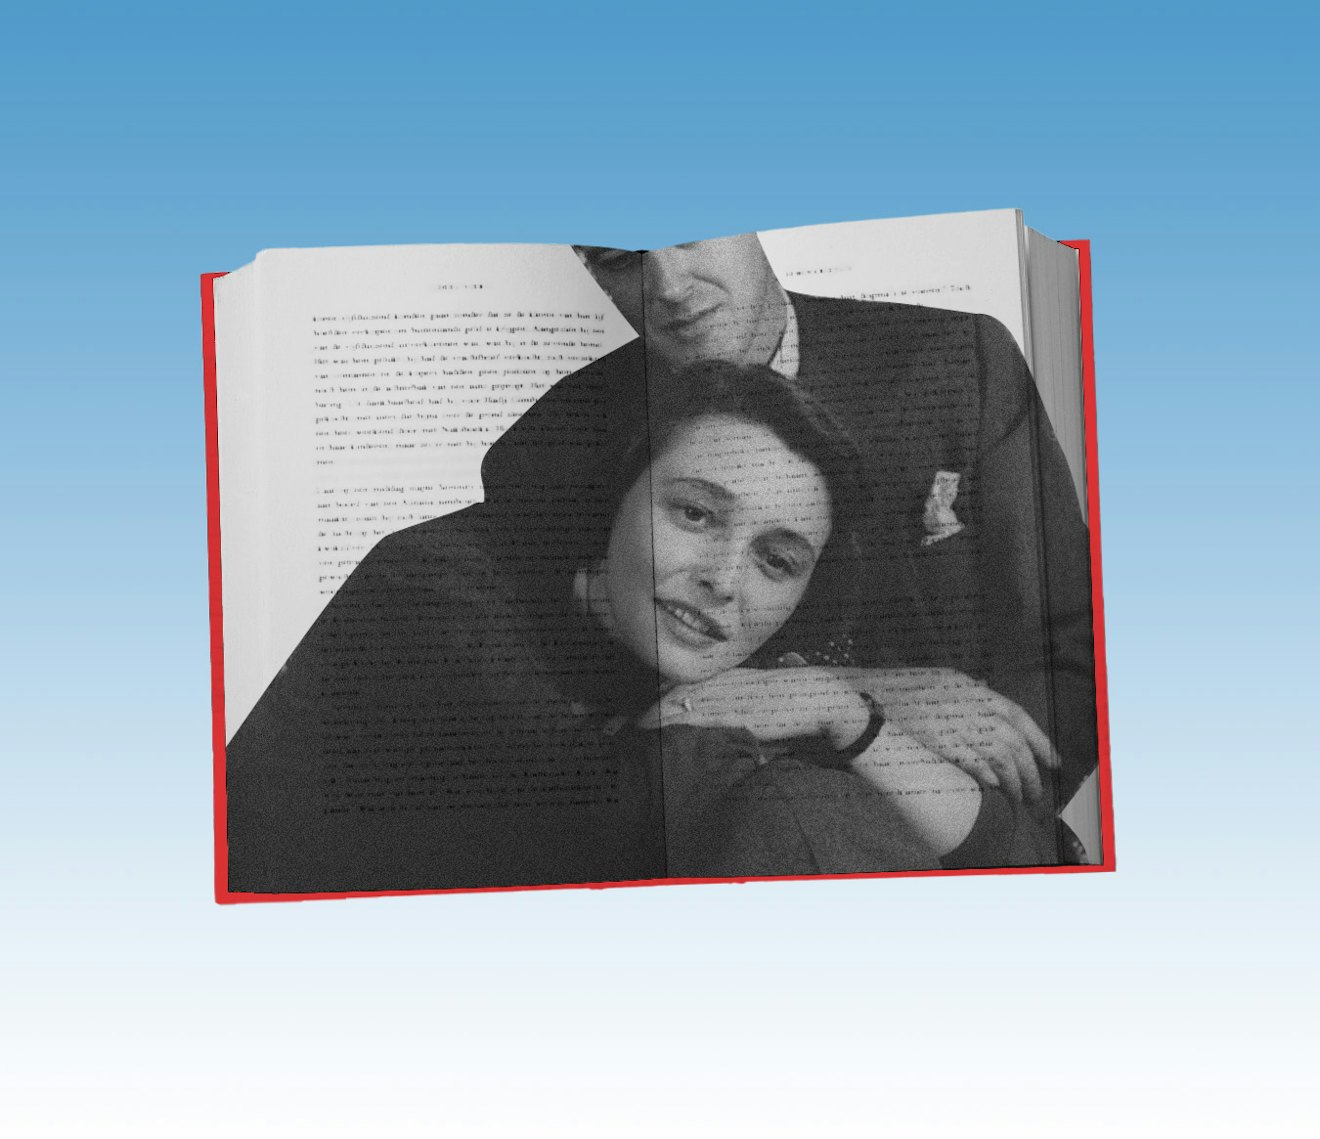 Фотография жены-литератора со своим мужем, наложенная на книгу.